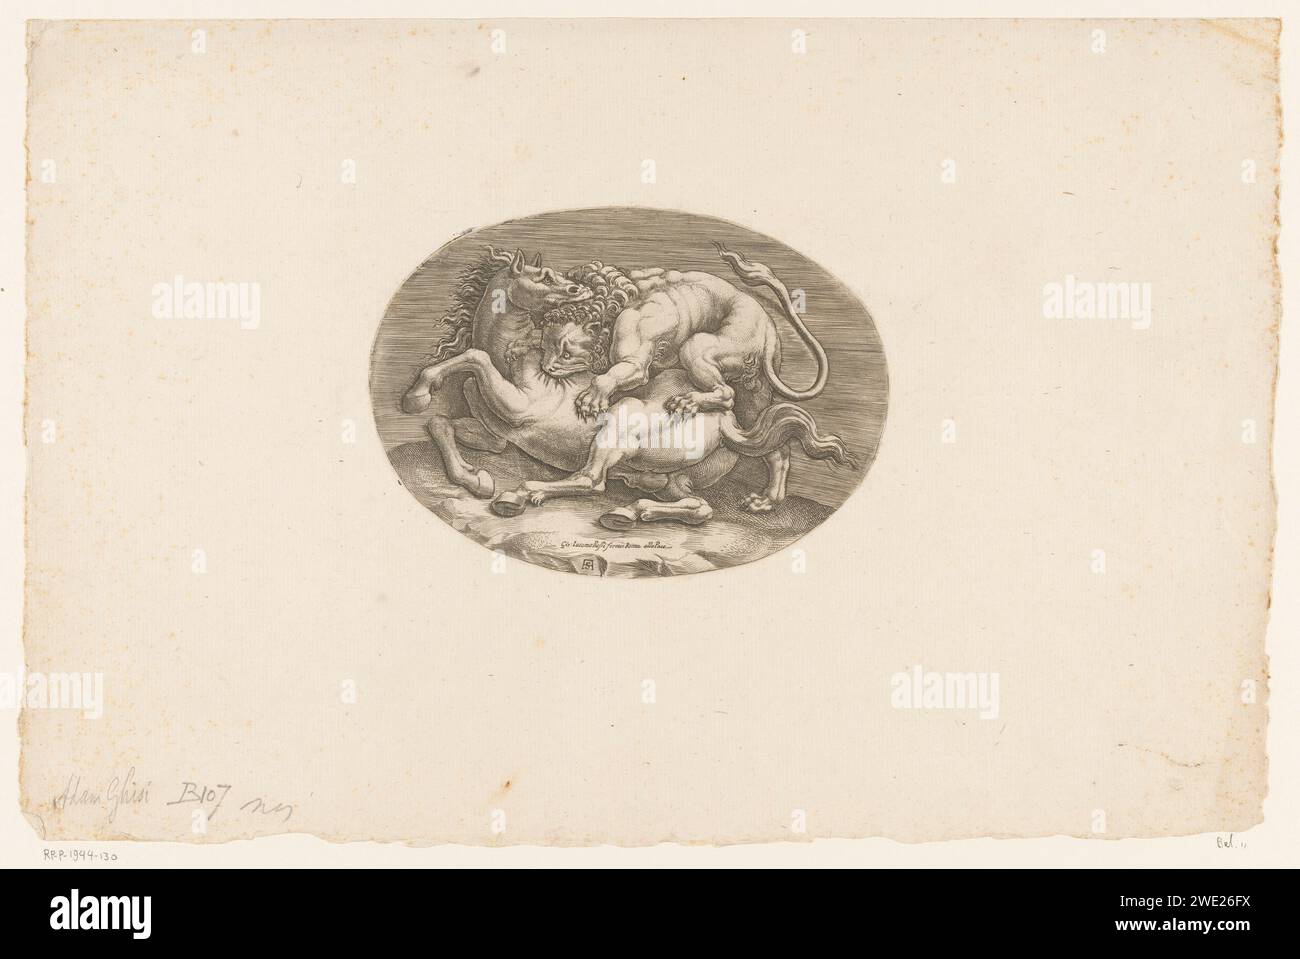 Cheval attaqué par un lion, Adamo Scultori, d'après Giulio Romano, d'après Anonymous, c. 1540 - c. 1585 imprimer Un lion et un cheval en combat. Le lion gravit le cheval lors d'une attaque. Il se mordit dans la peau du cheval, tandis que le cheval à son tour mordait la tête du lion. Imprimeur : Italiaaprès dessin par : Italiaaprès sculpture par : Rome gravure sur papier bêtes de proie, animaux prédateurs : lion. cheval. animaux (+ animaux de combat ; relations agressives) Banque D'Images